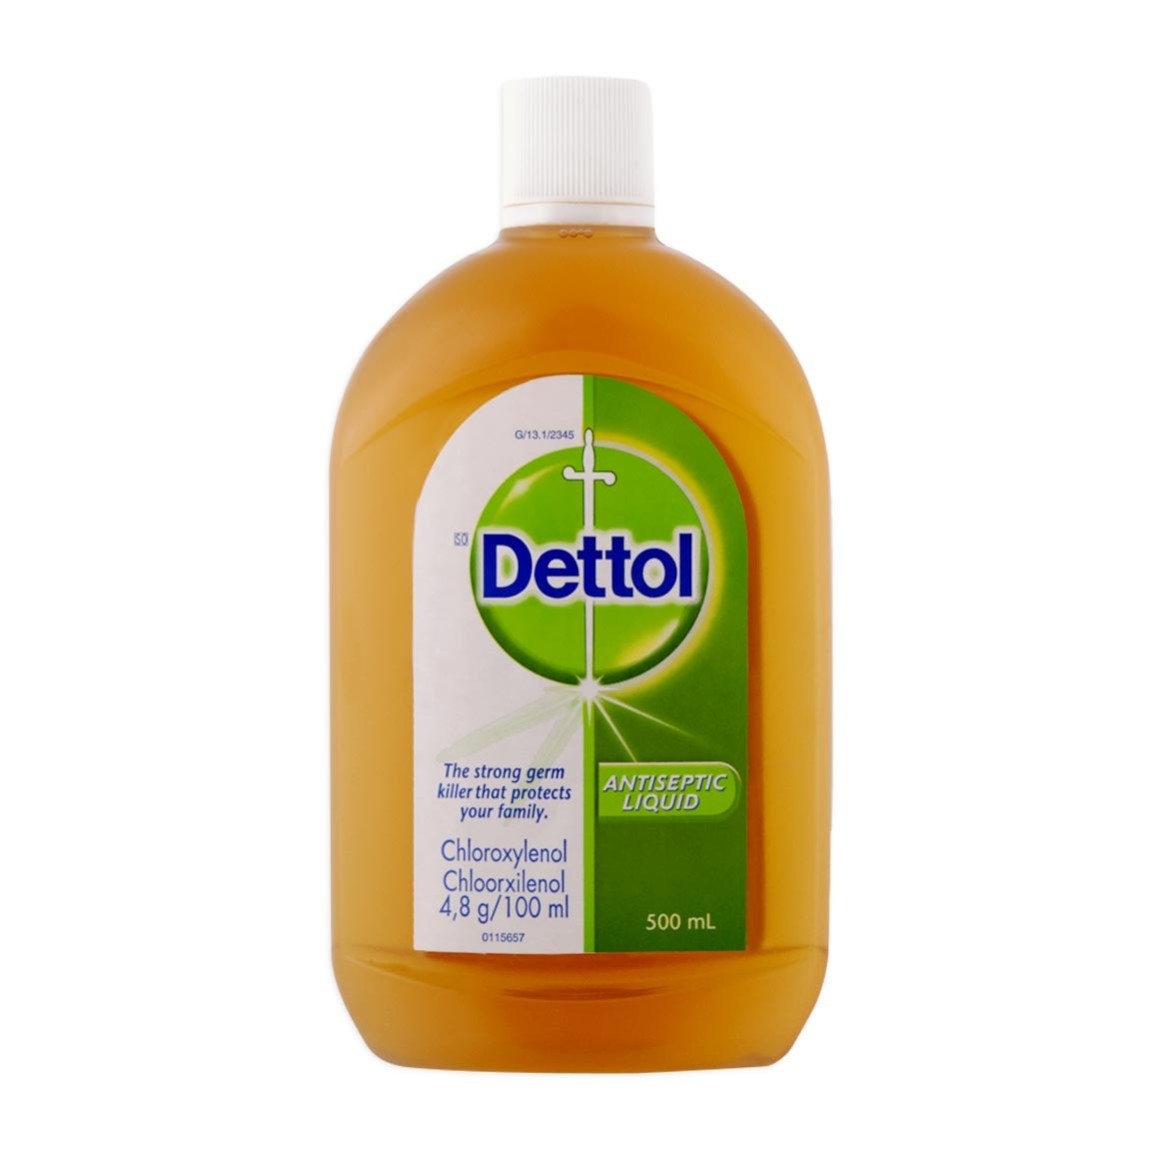 Dettol antiseptic liquid Soap 500ml